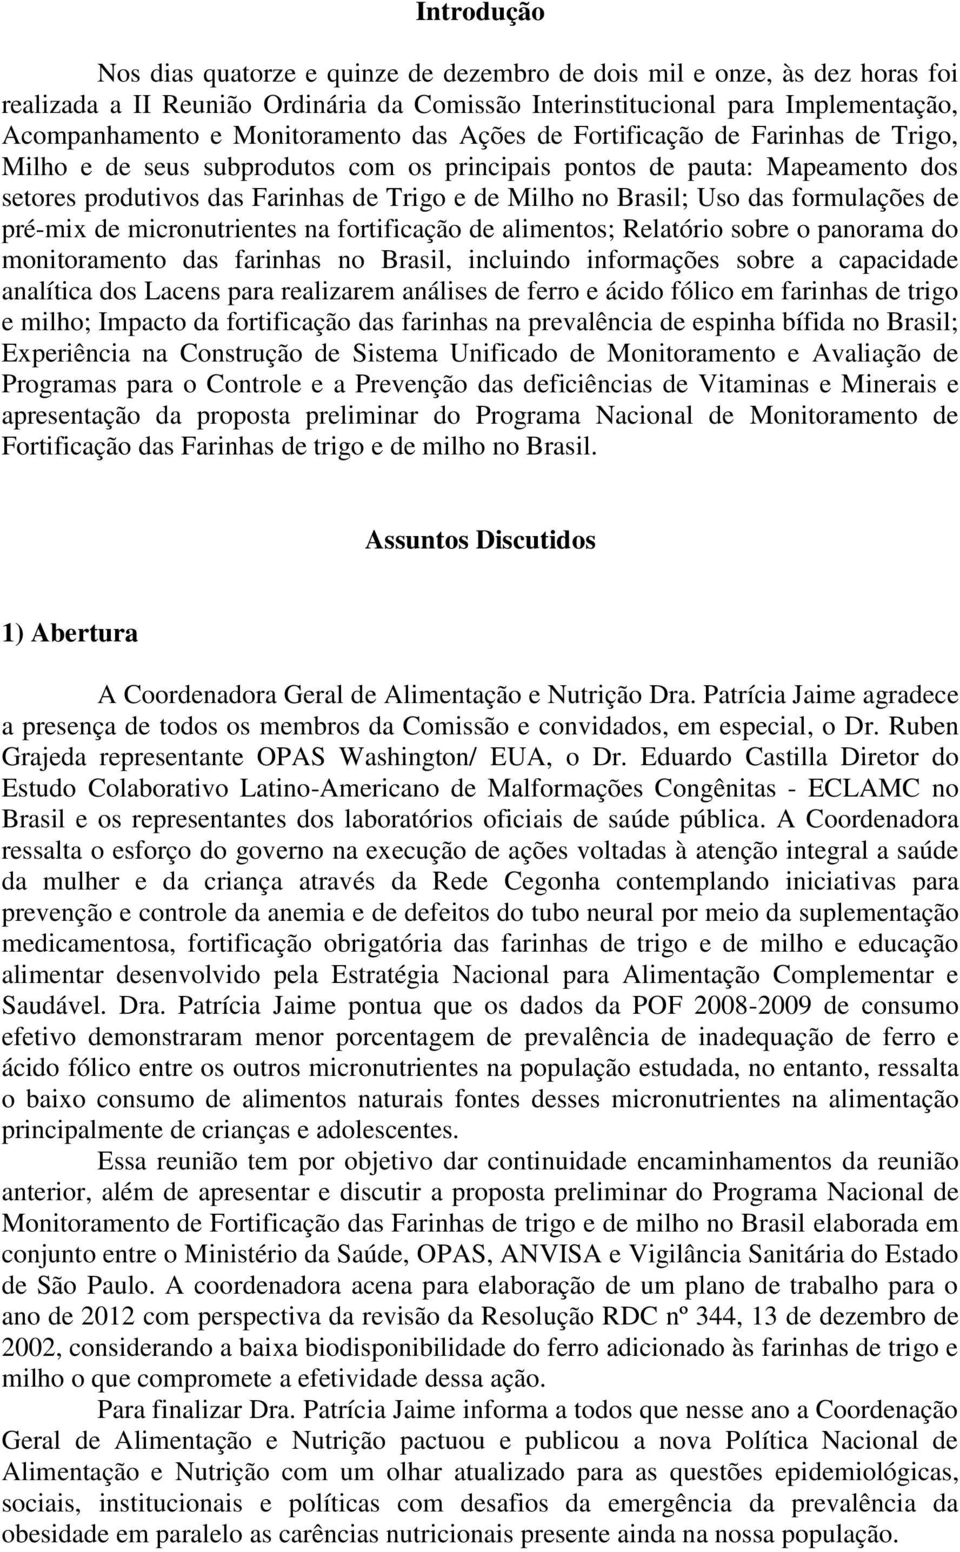 Brasil; Uso das formulações de pré-mix de micronutrientes na fortificação de alimentos; Relatório sobre o panorama do monitoramento das farinhas no Brasil, incluindo informações sobre a capacidade